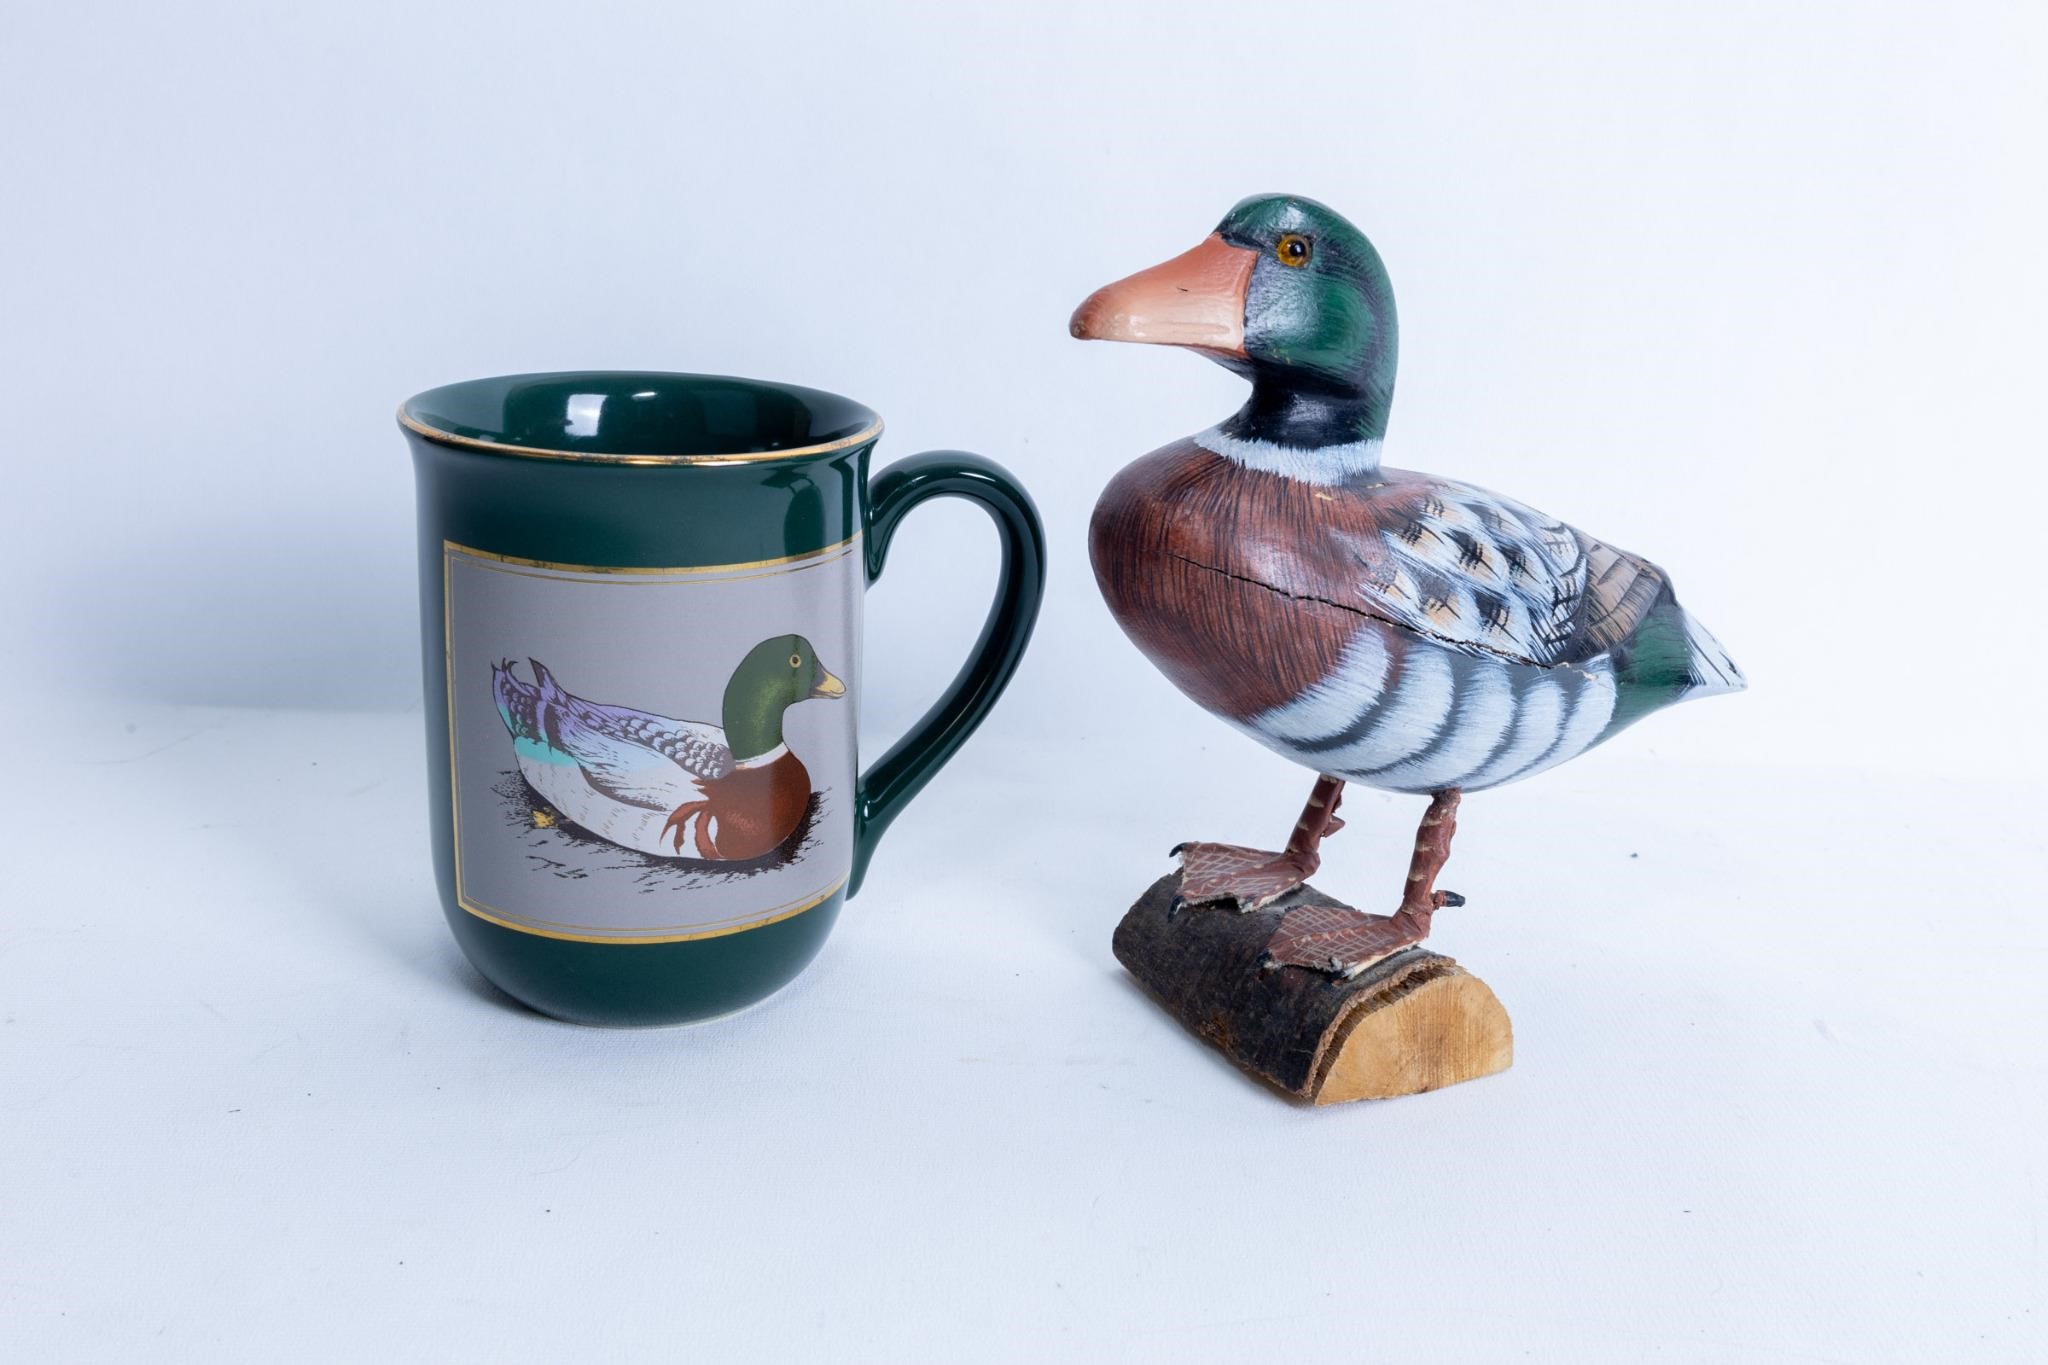 Carved duck figure & mug